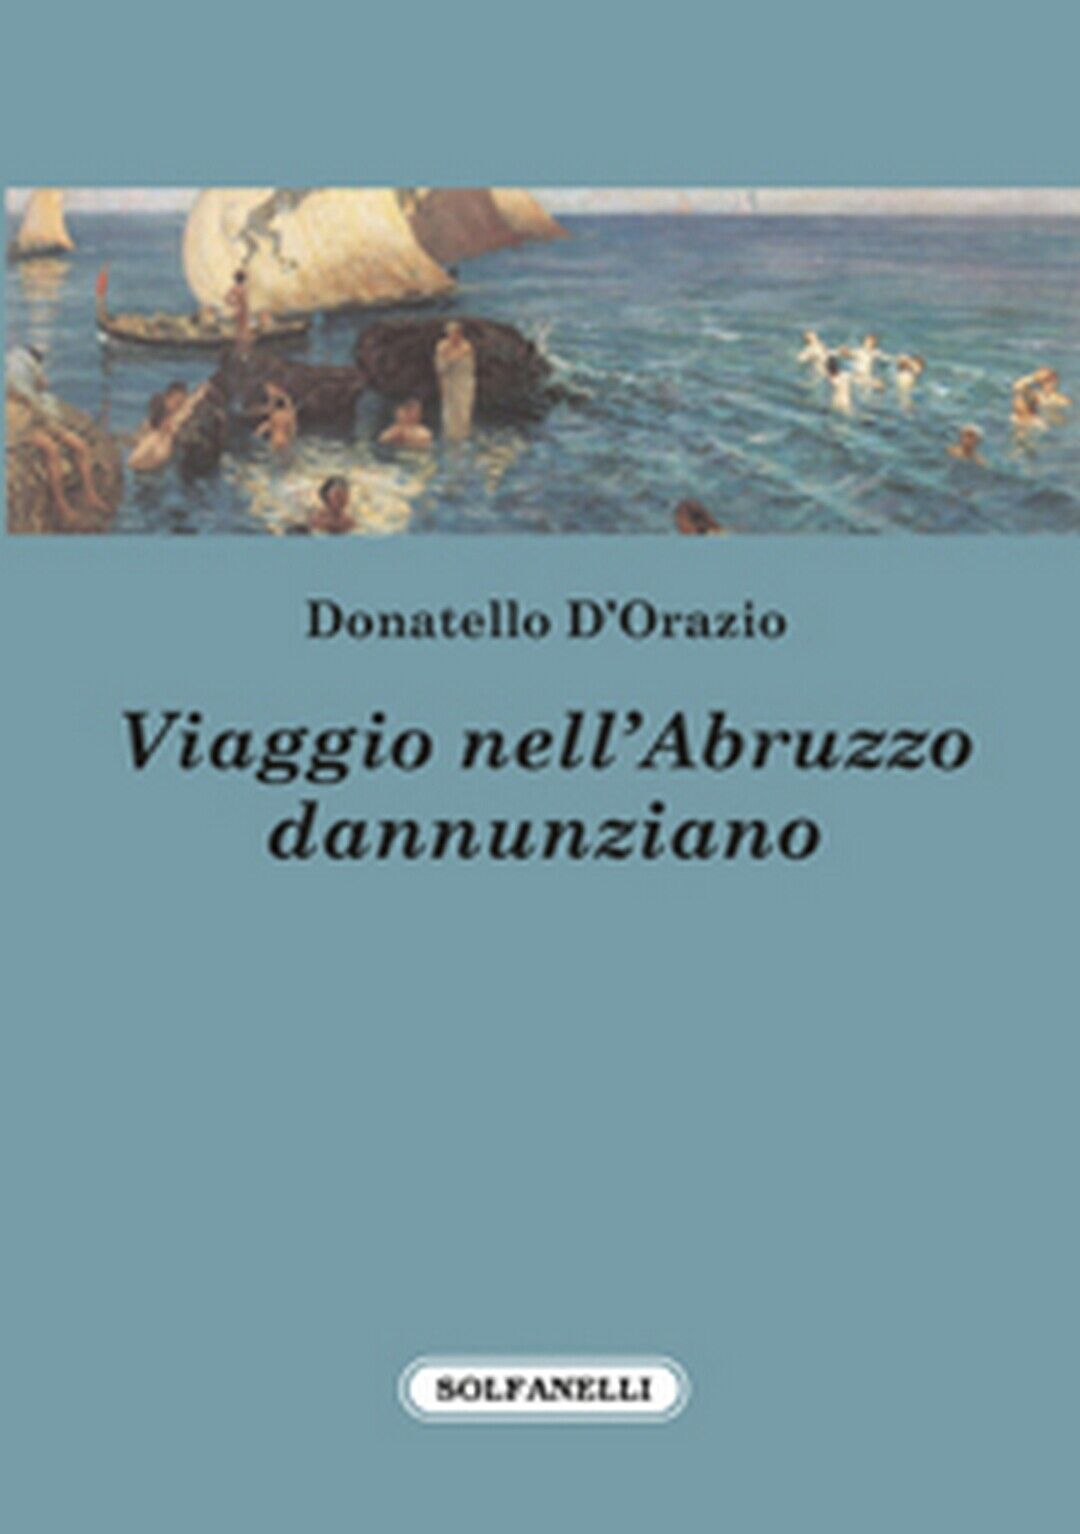 VIAGGIO NELL'ABRUZZO DANNUNZIANO  di Donatello d'Orazio,  Solfanelli Edizioni